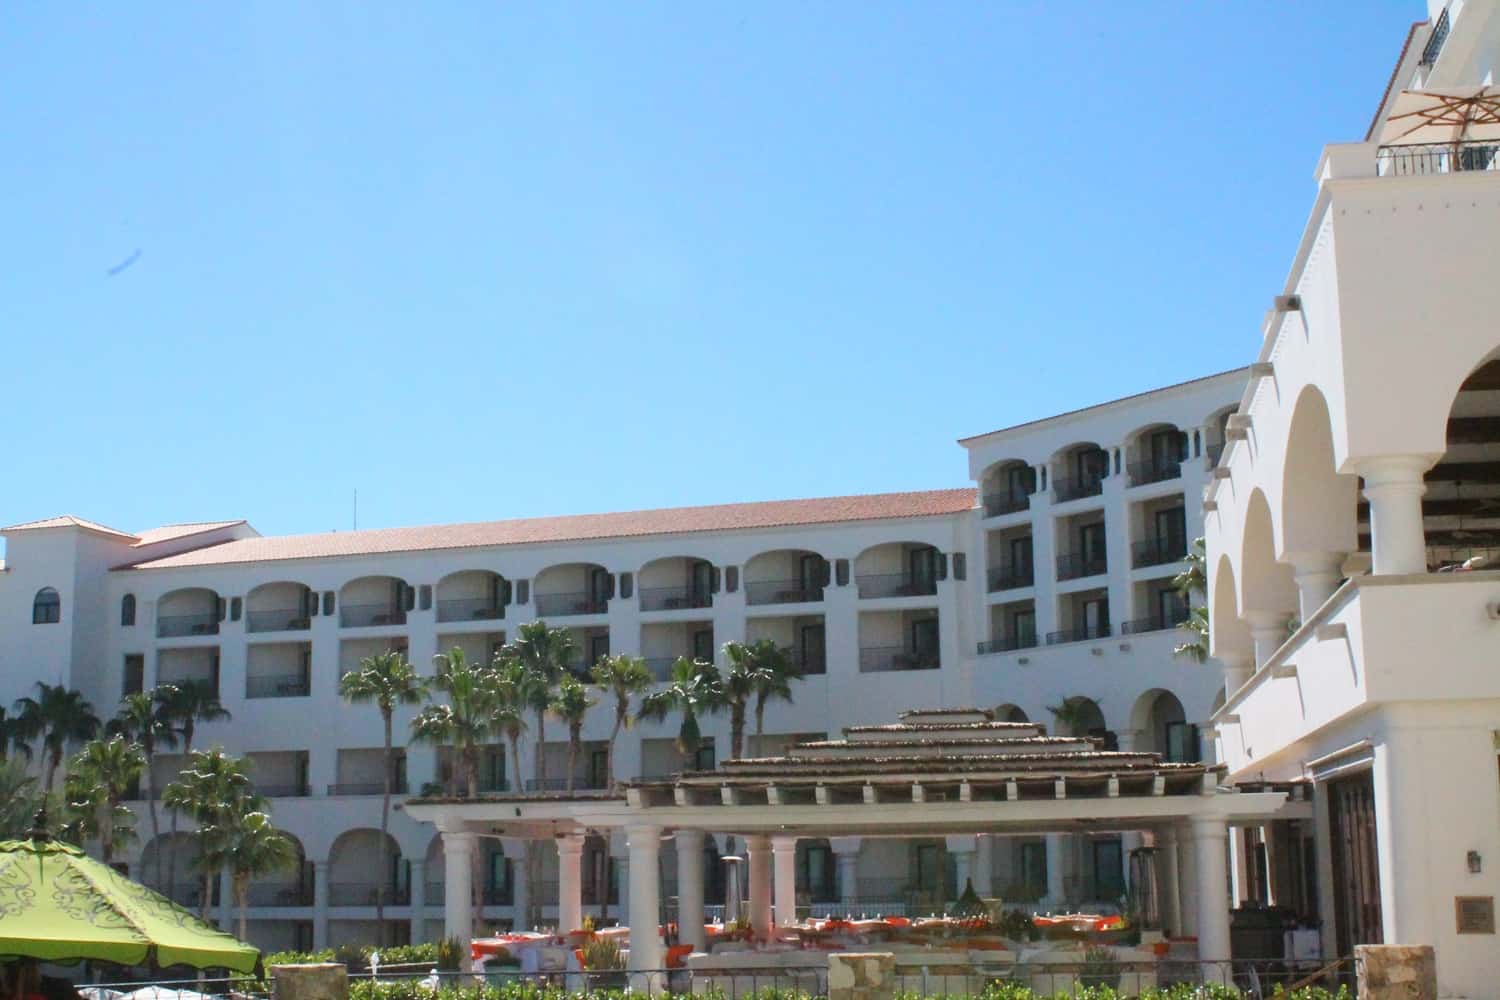 Hoteles Los Cabos (1)